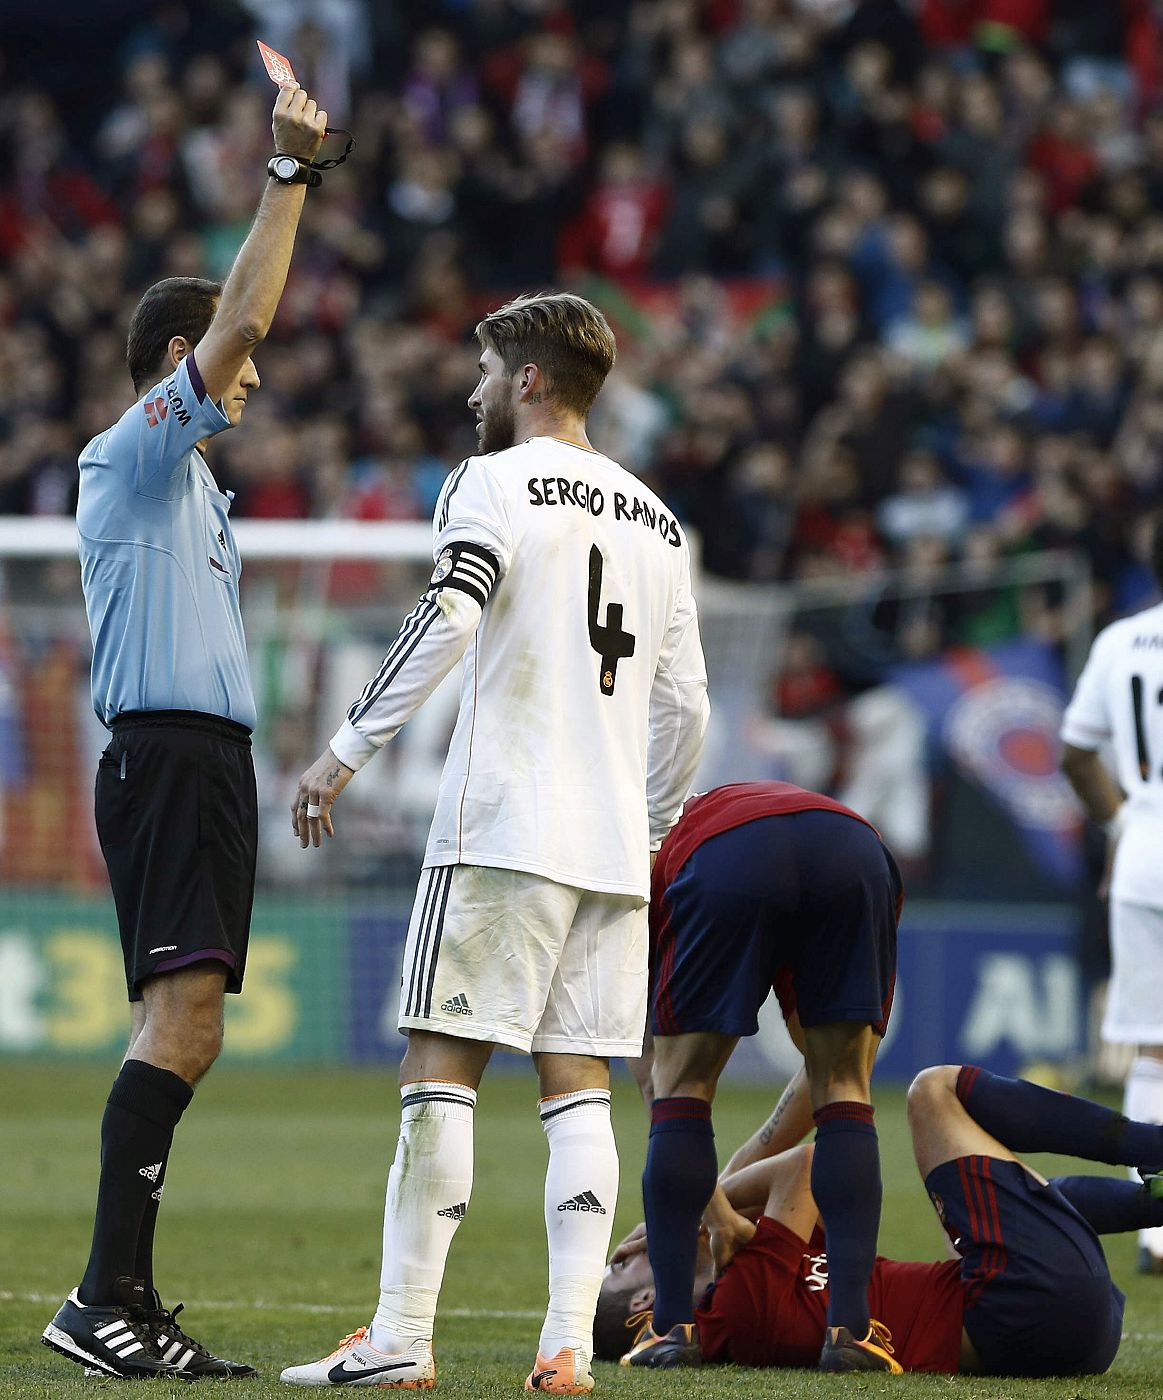 Sergio Ramos, en el partido contra Osasuna en el que fue expulsado por doble tarjeta amarilla.